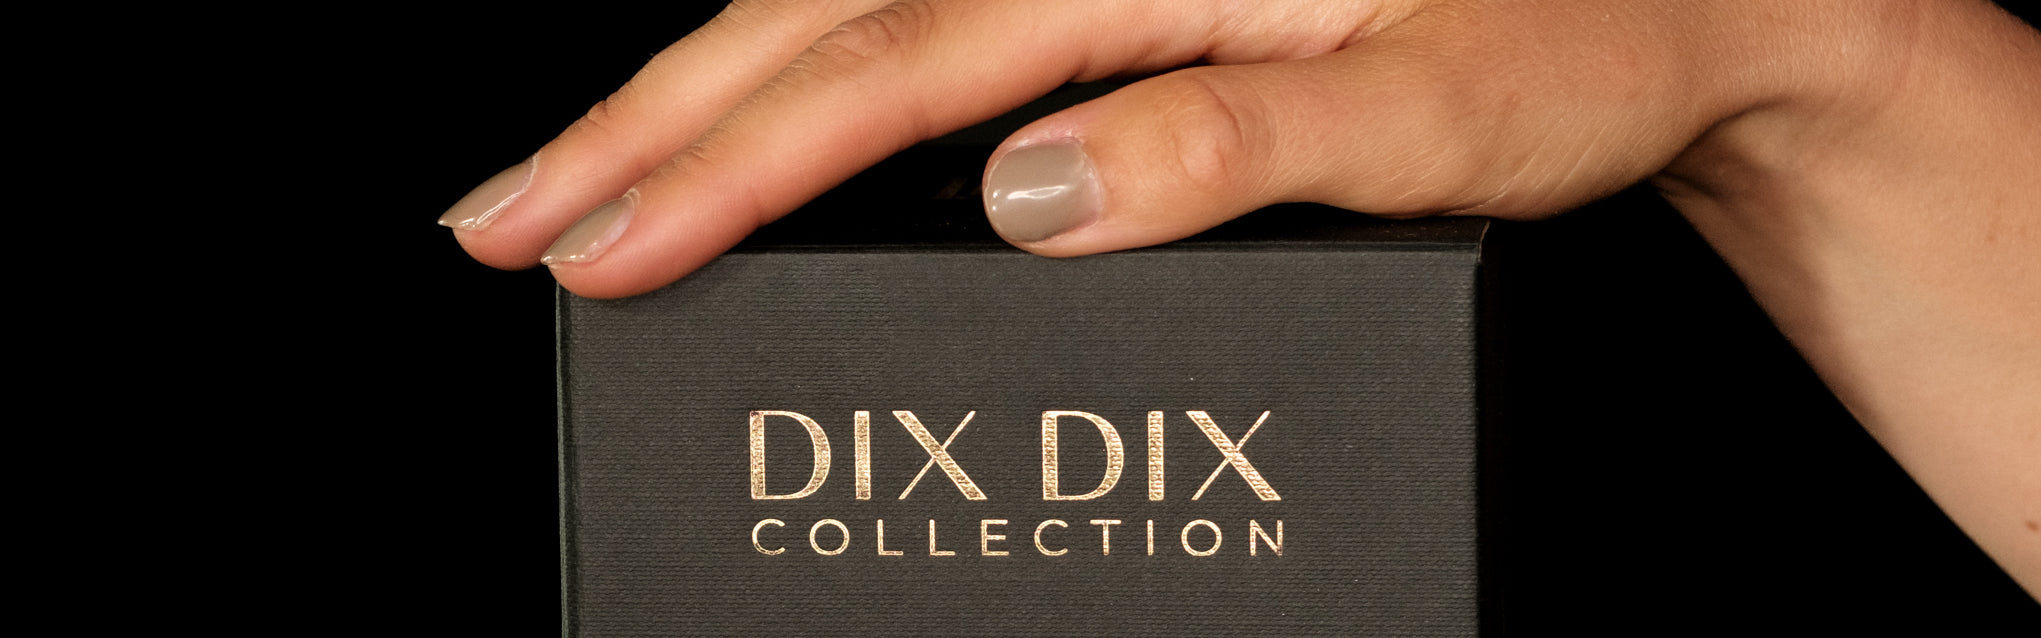 Onze luxe verpakking die 100% recyclebaar is - DIX DIX collection